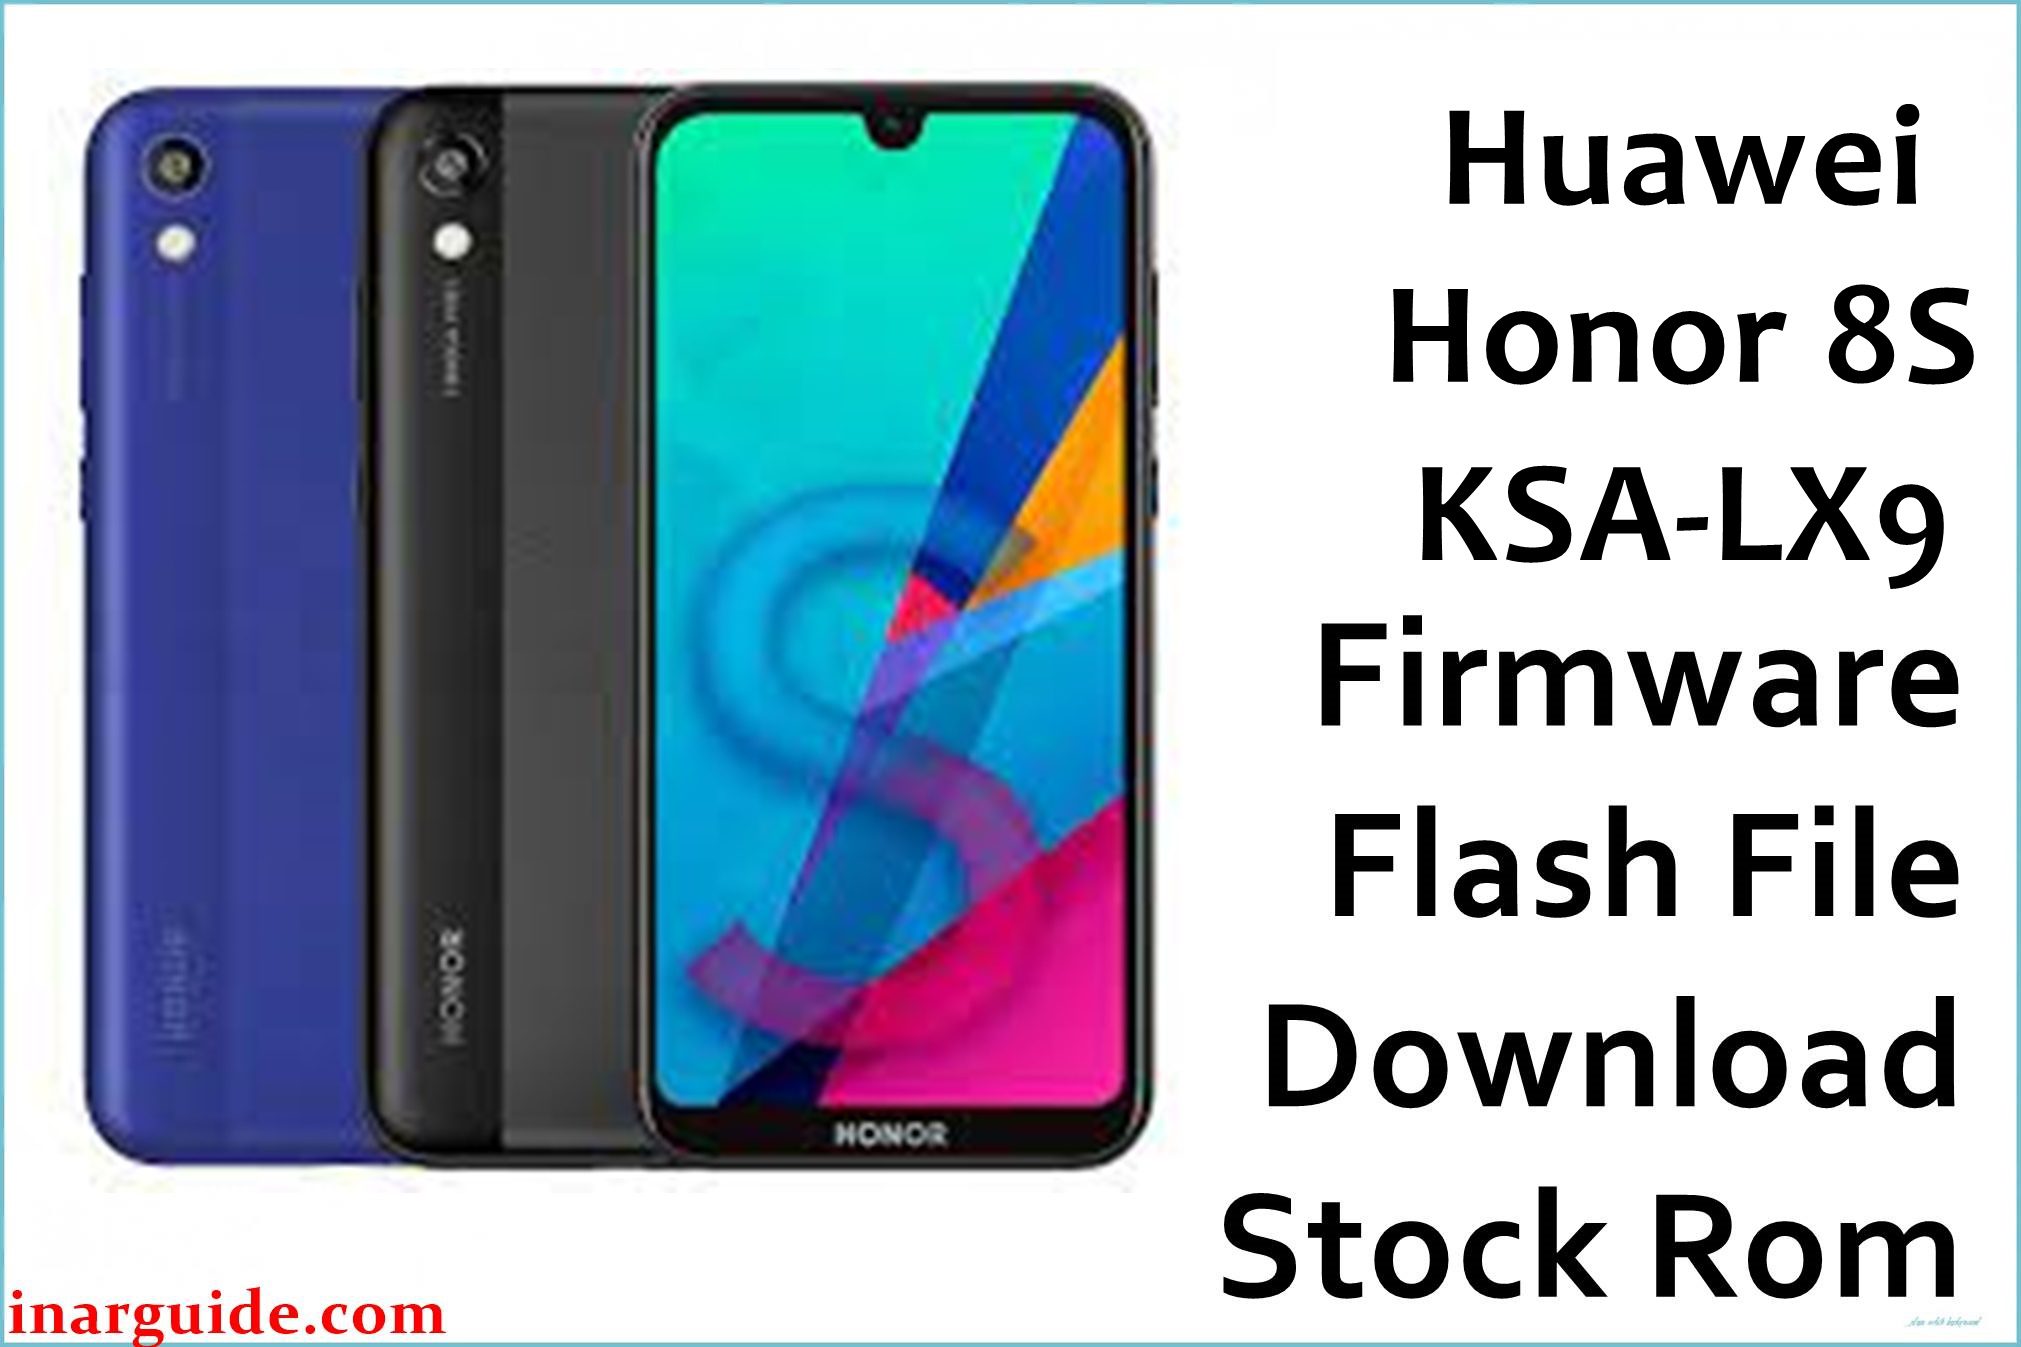 Huawei Honor 8S KSA LX9